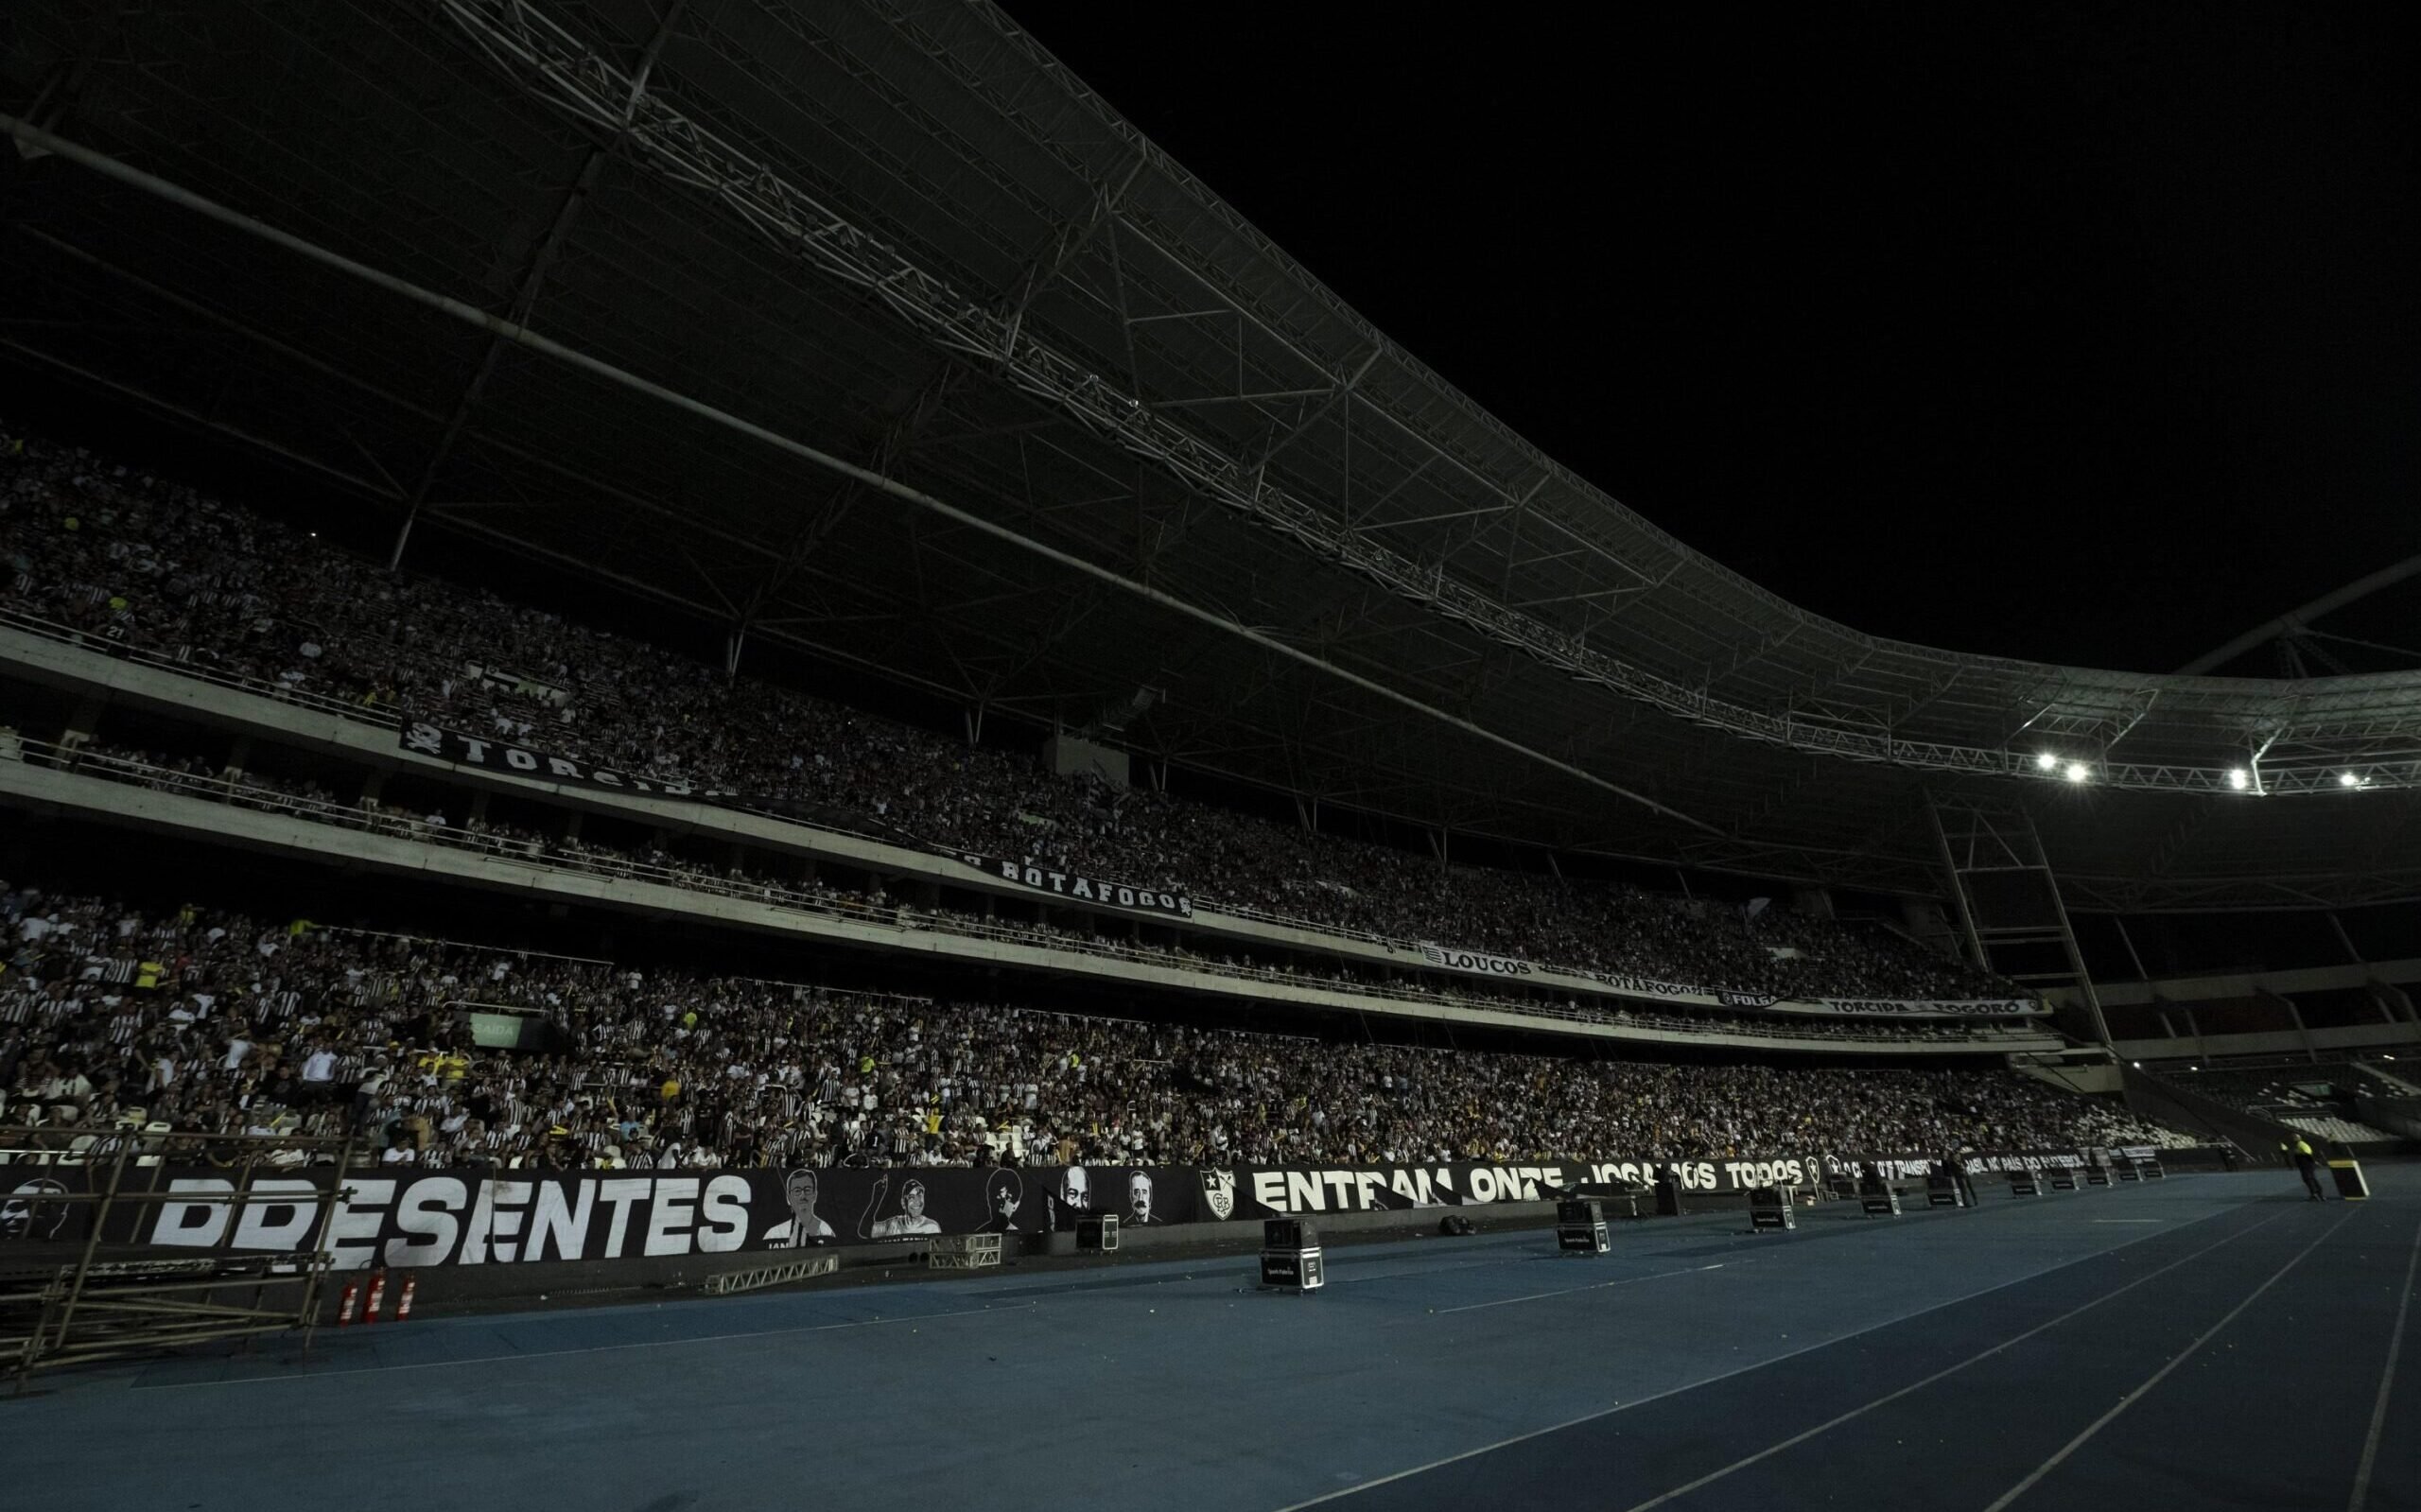 Por que o Botafogo x Athletico-PR foi suspenso? Quando o jogo será  disputado pelo Brasileirão?